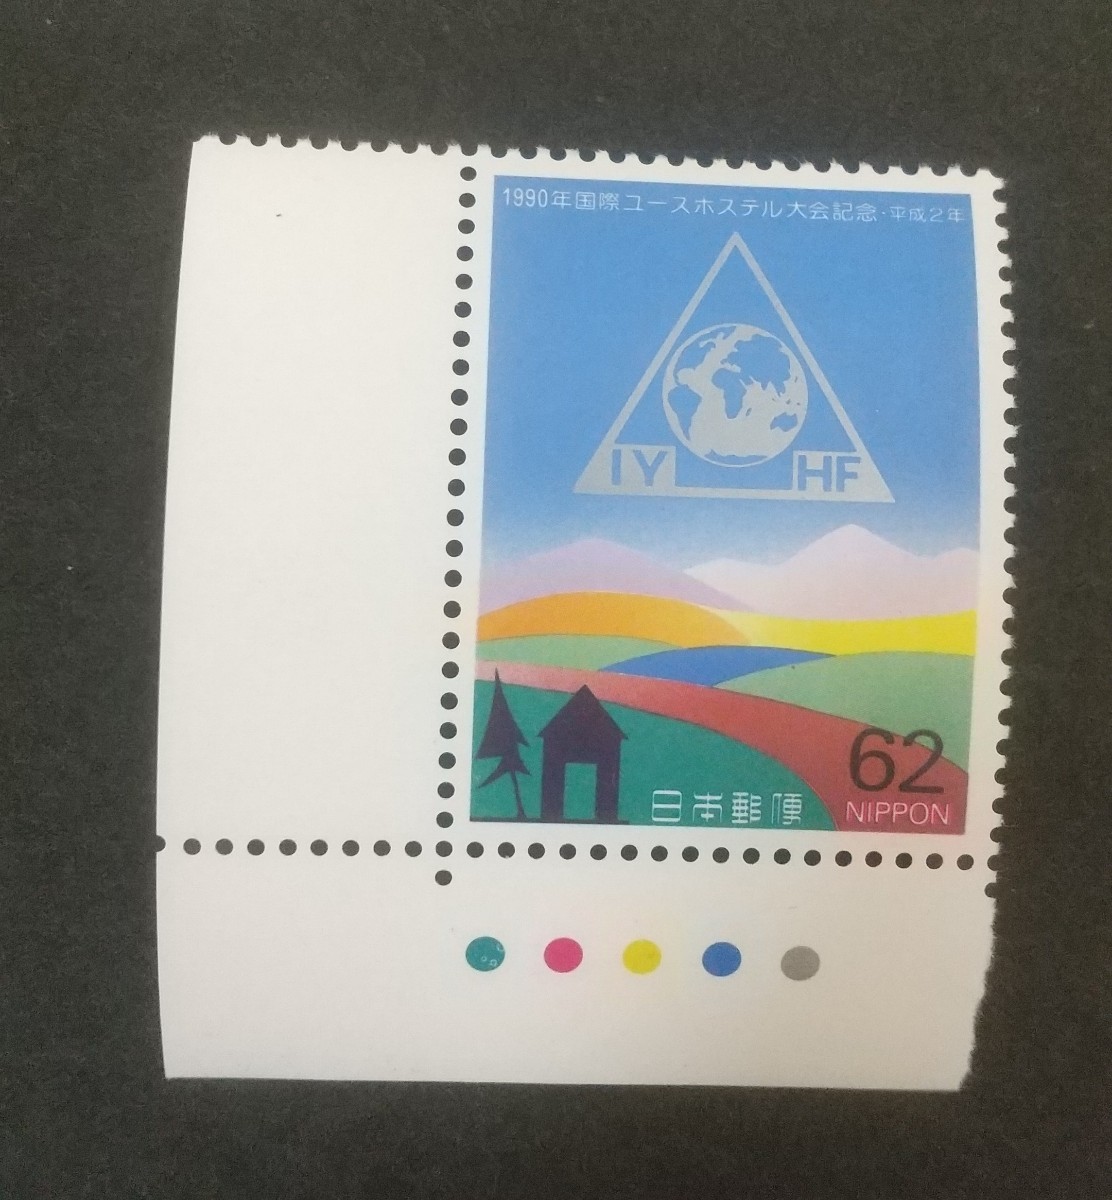 記念切手 国際ユースホステル大会記念 1990 カラーマーク付き 未使用品 (ST-10)_画像1